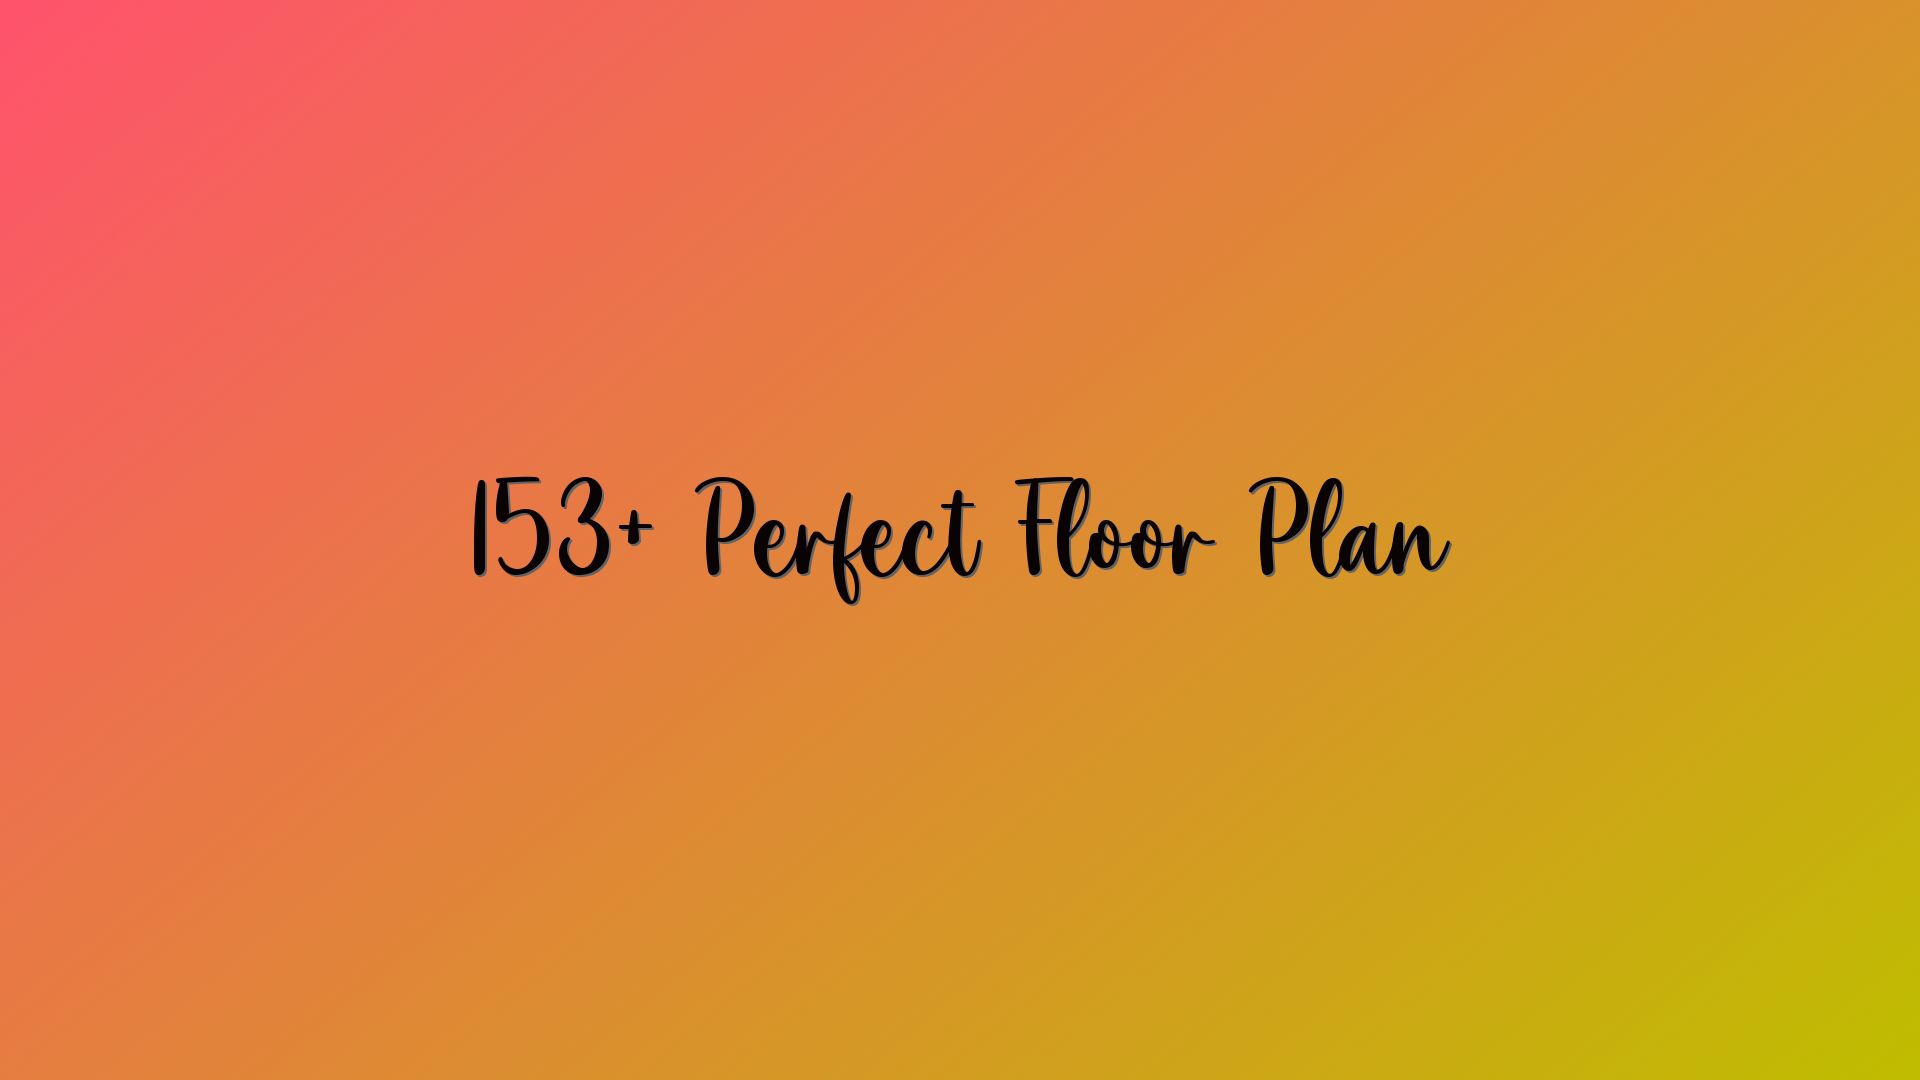 153+ Perfect Floor Plan